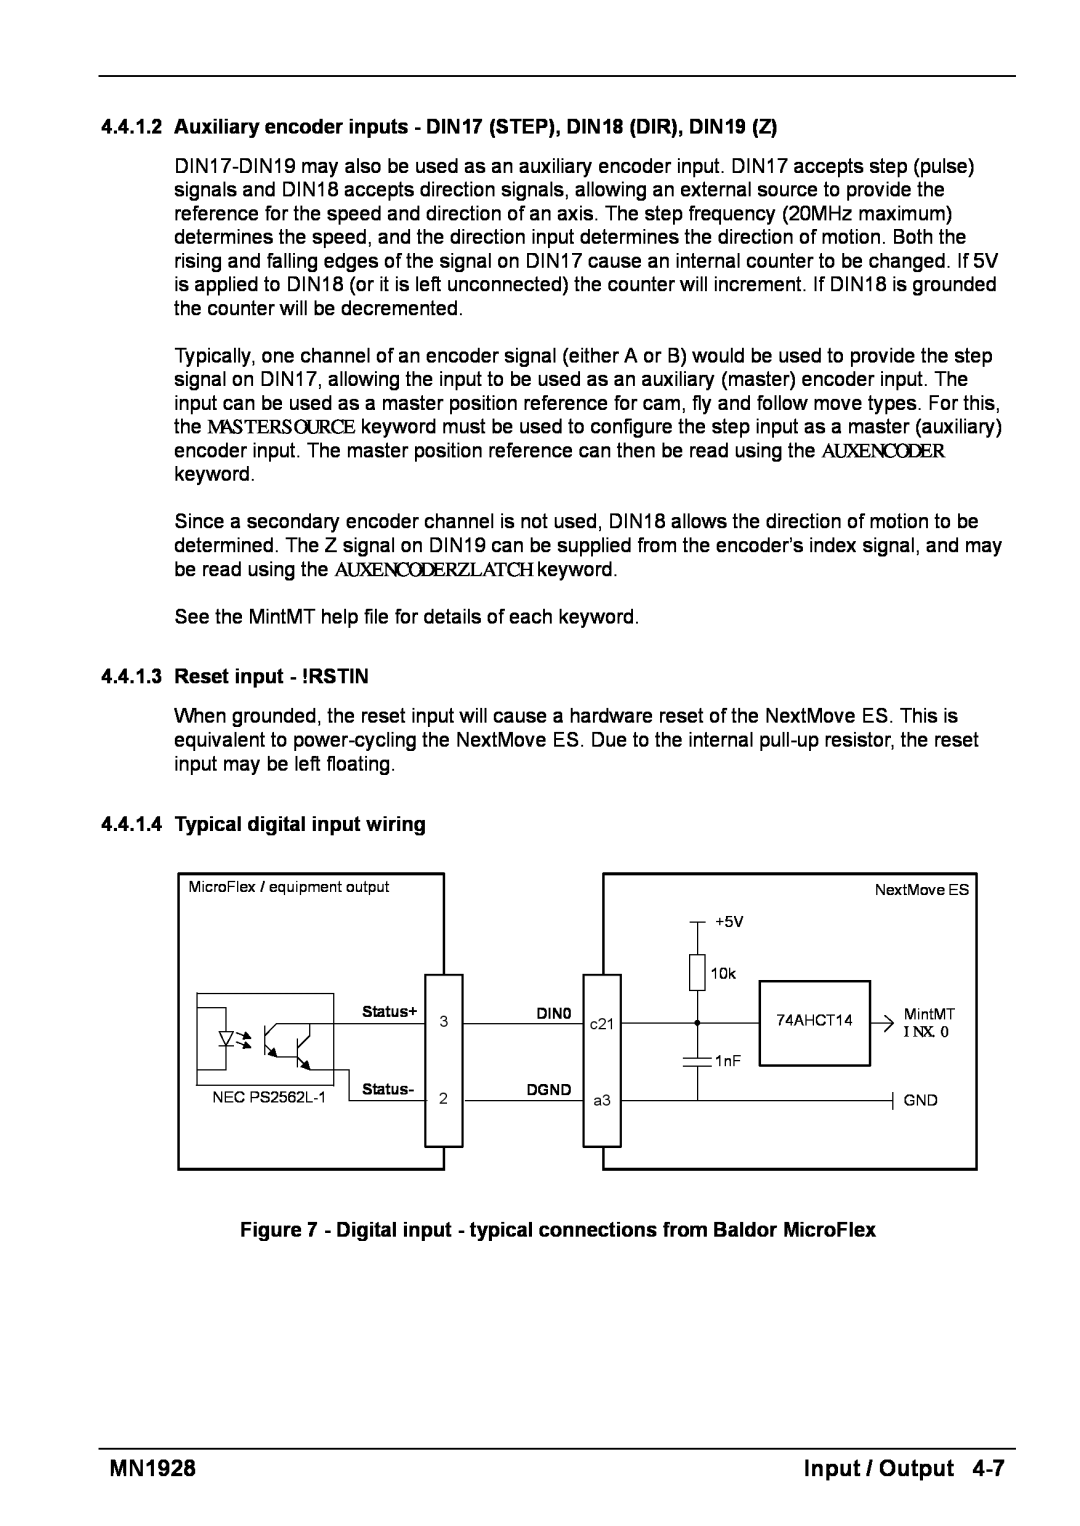 Baldor MN1928 Input / Output, 4.4.1.3Reset input - !RSTIN, Typical digital input wiring, Status+, DIN0 DGND 